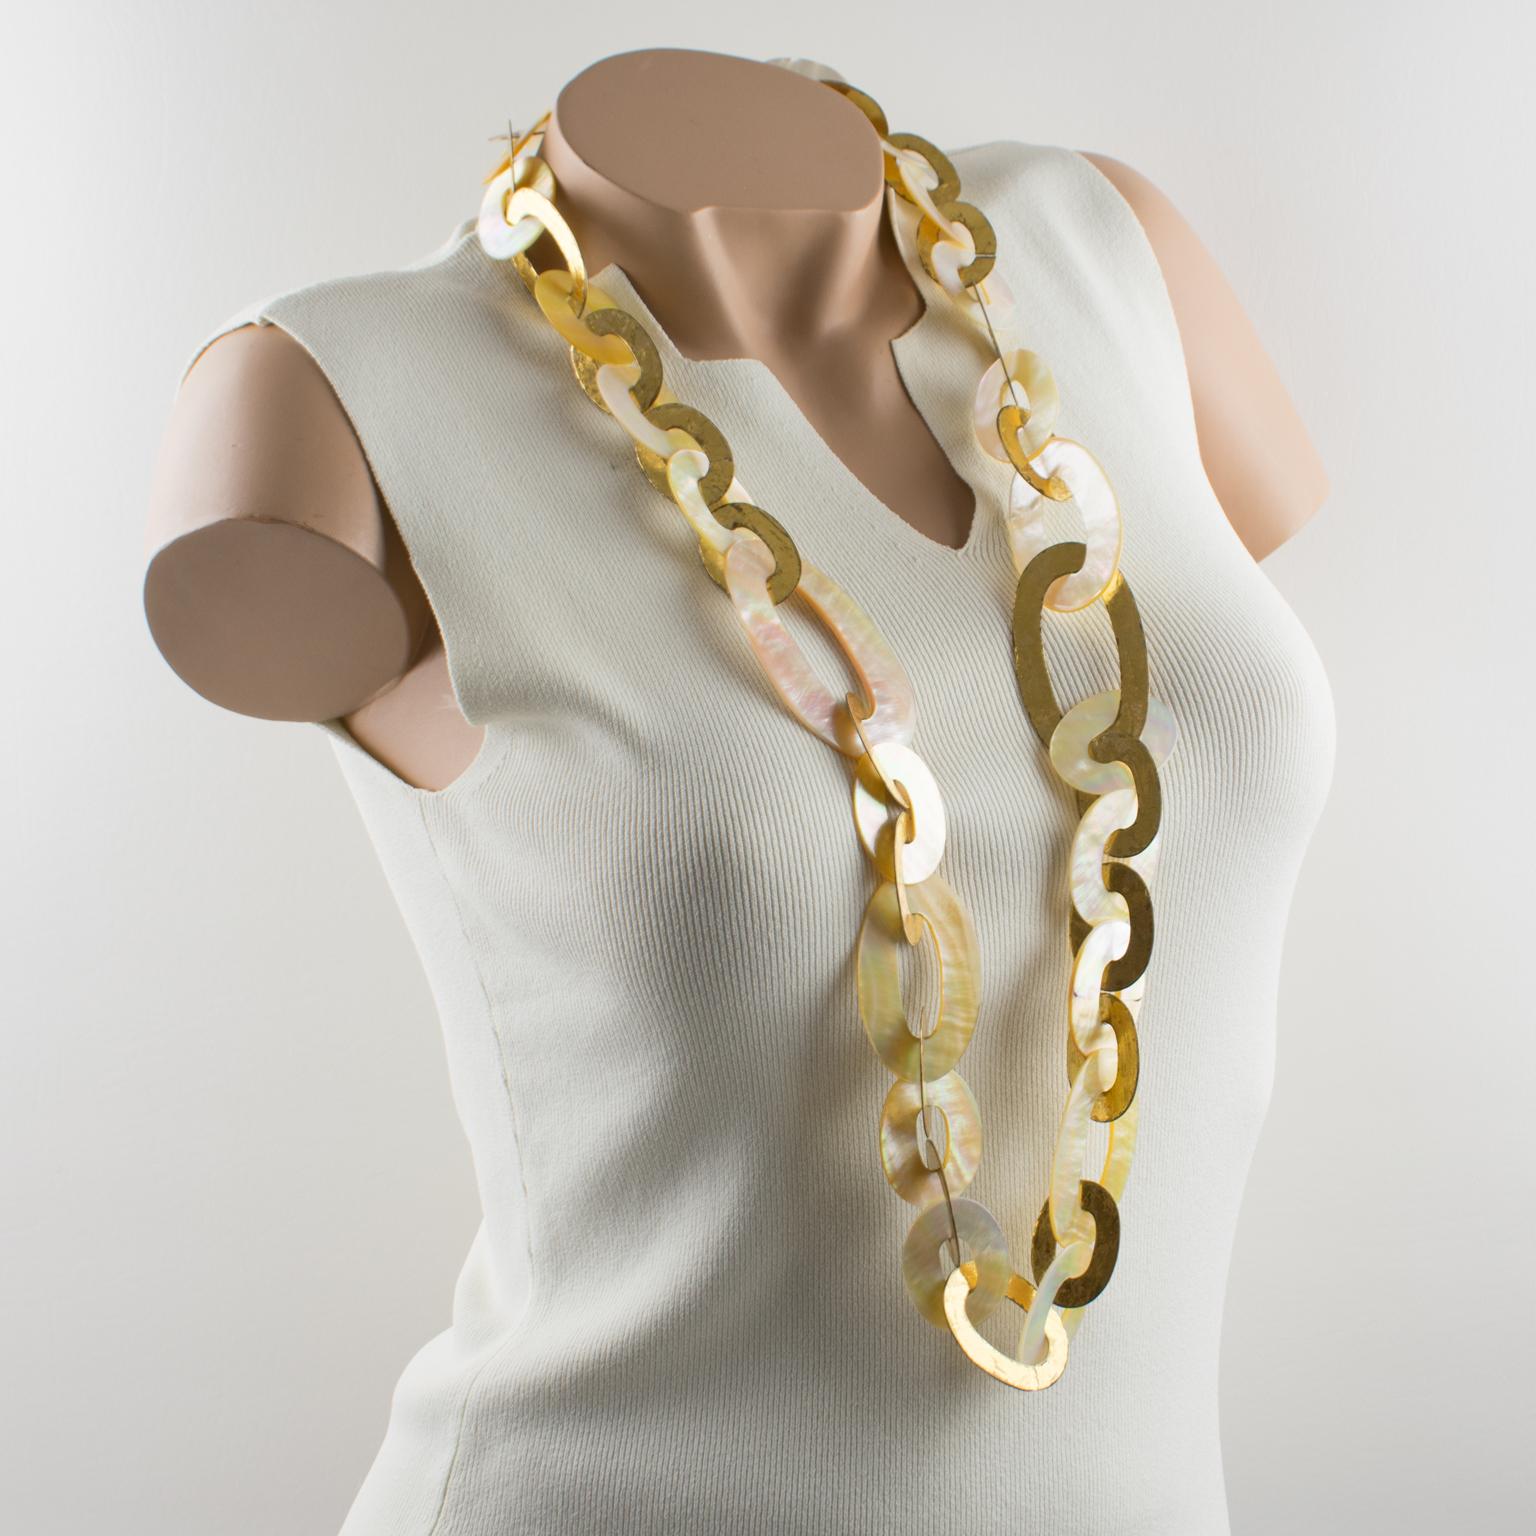 Ce collier extra-long sophistiqué de Gerda Lyngaard pour Monies présente une forme dimensionnelle avec des éléments géométriques ovales à maillons plats en métal doré contrastant avec des éléments à maillons en coquillage naturel formant une